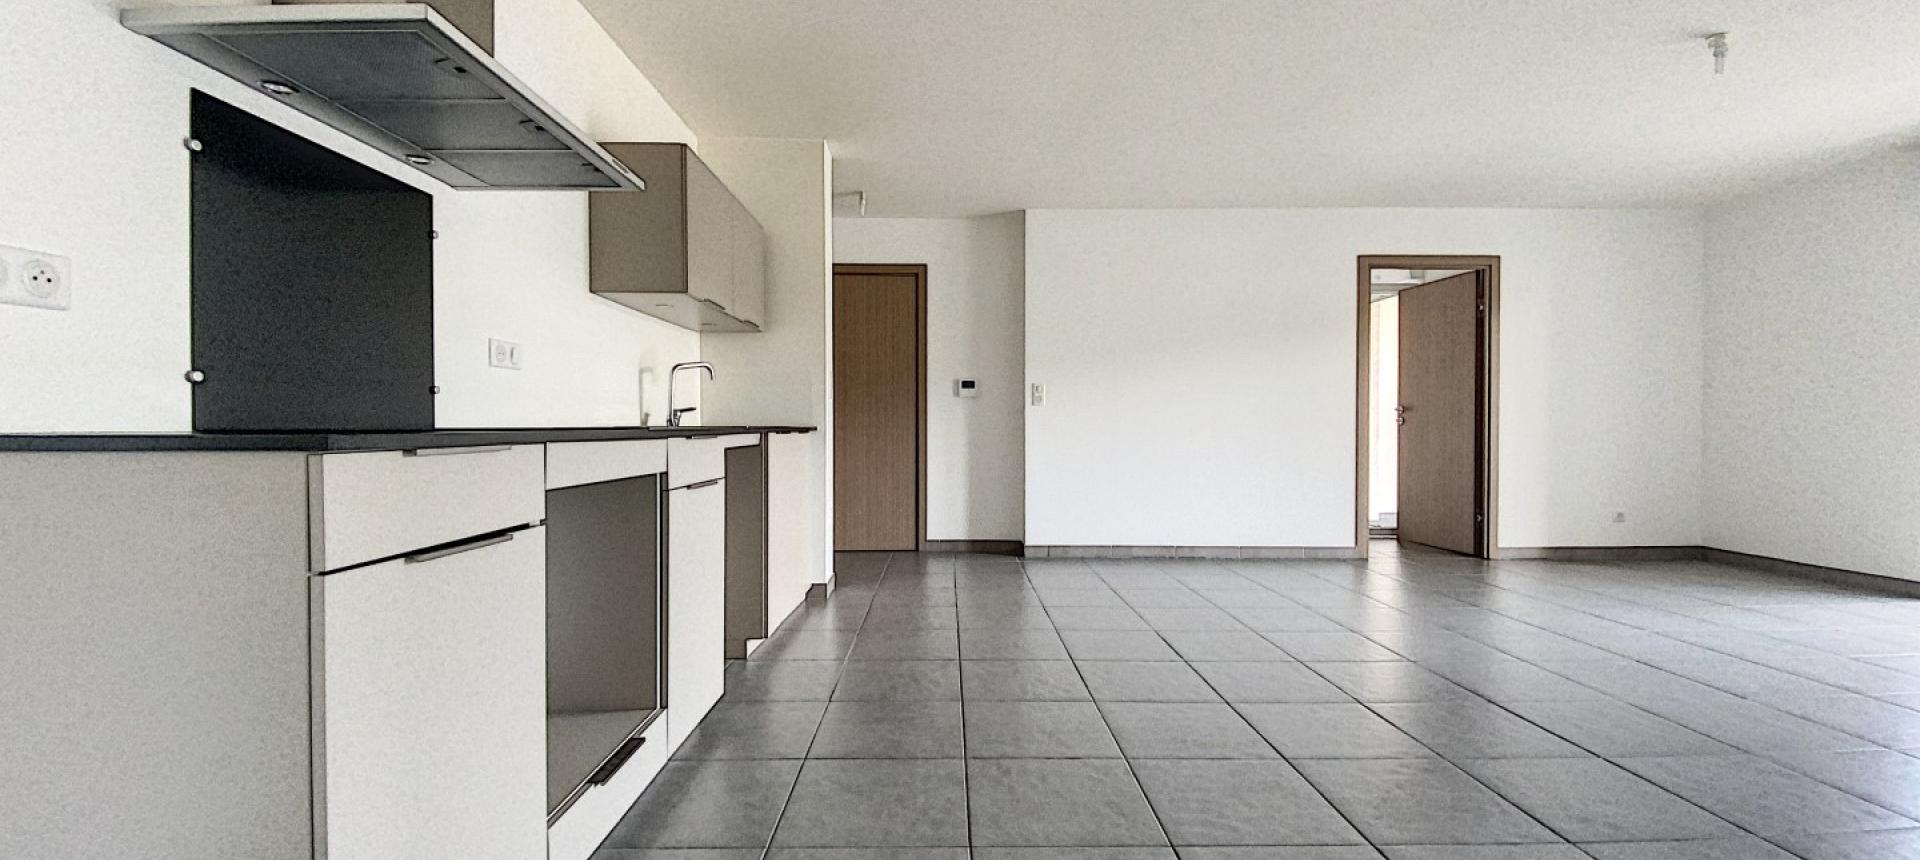 A Ajaccio, secteur Rocade, vente d'un appartement de type F3 de 67 m² avec terrasse - résidence récente